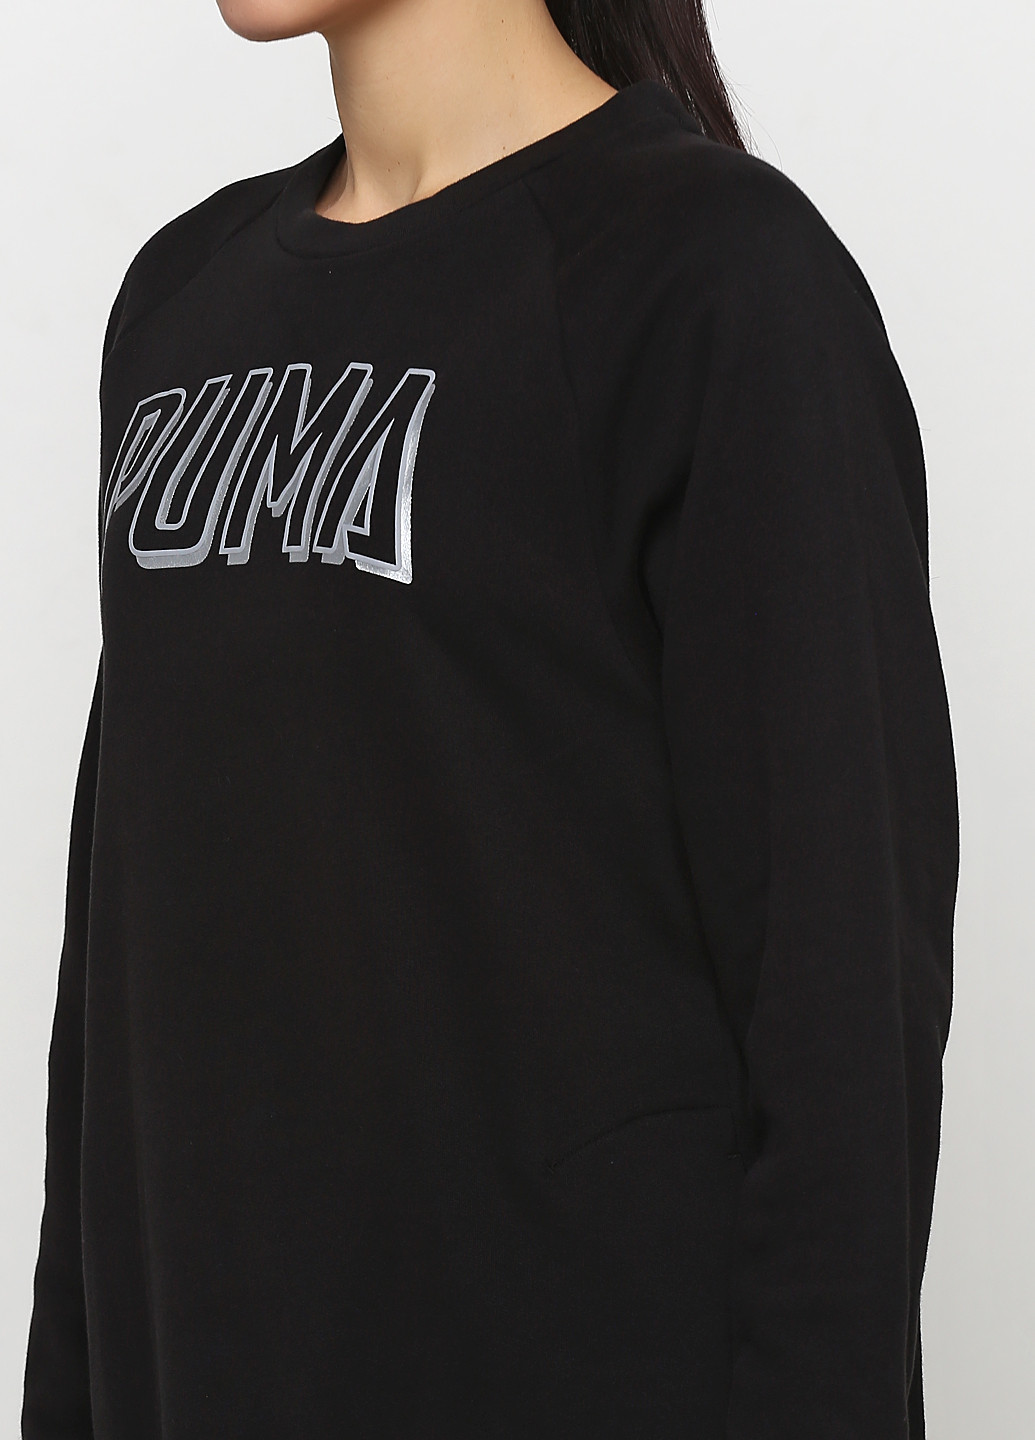 Чорна спортивна сукня оверсайз Puma з логотипом